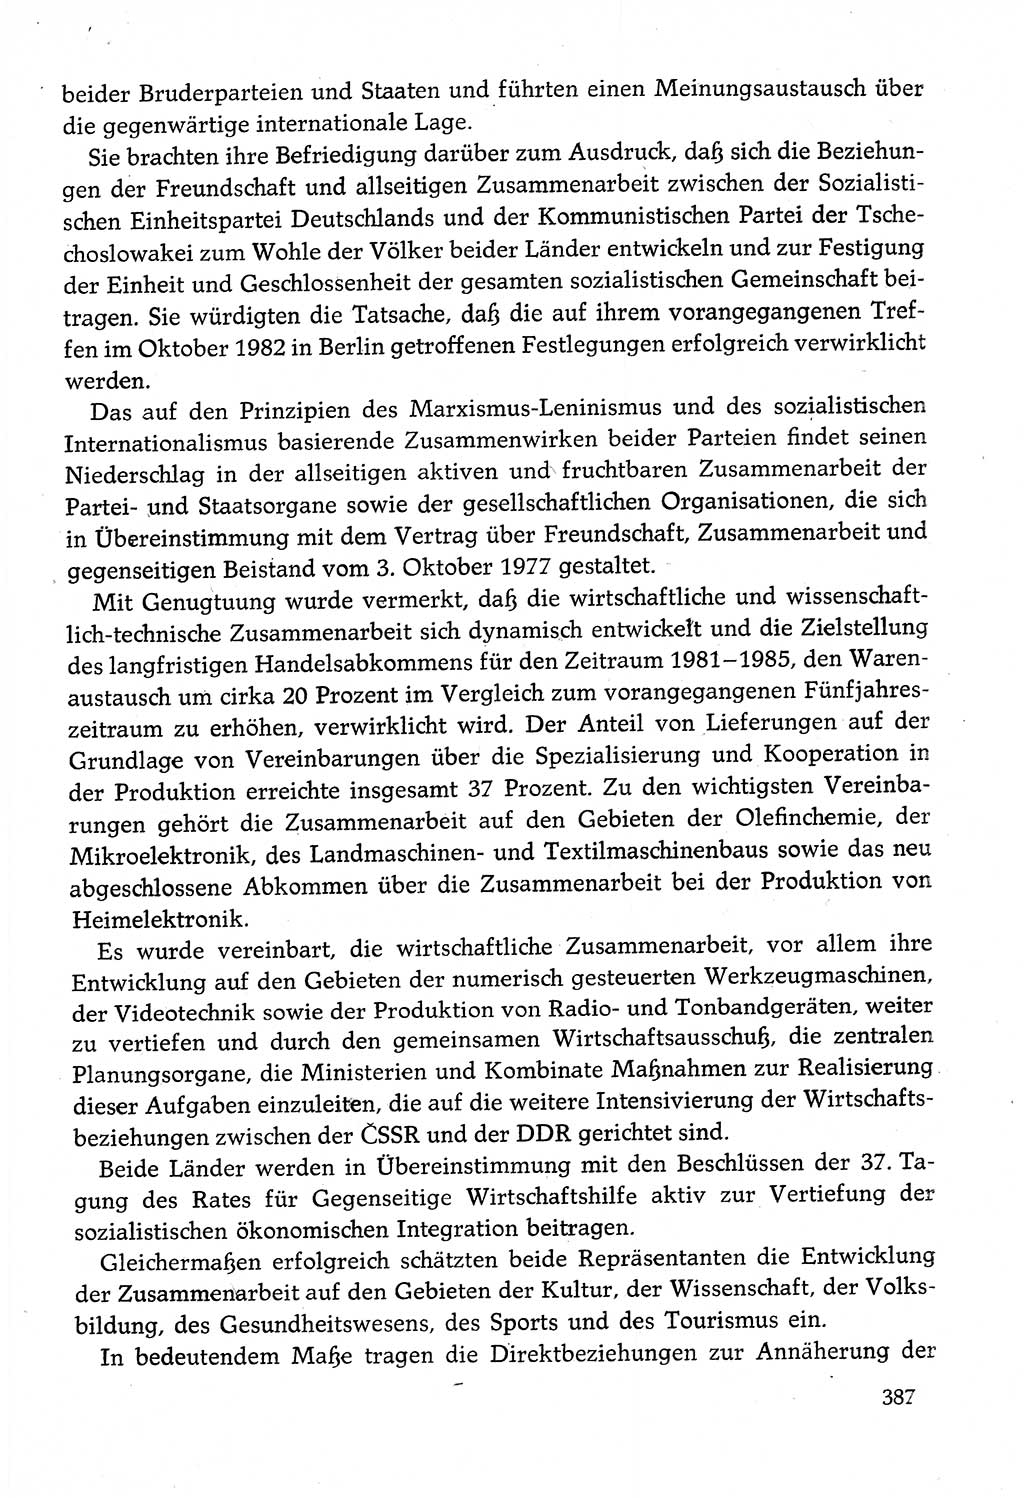 Dokumente der Sozialistischen Einheitspartei Deutschlands (SED) [Deutsche Demokratische Republik (DDR)] 1982-1983, Seite 387 (Dok. SED DDR 1982-1983, S. 387)